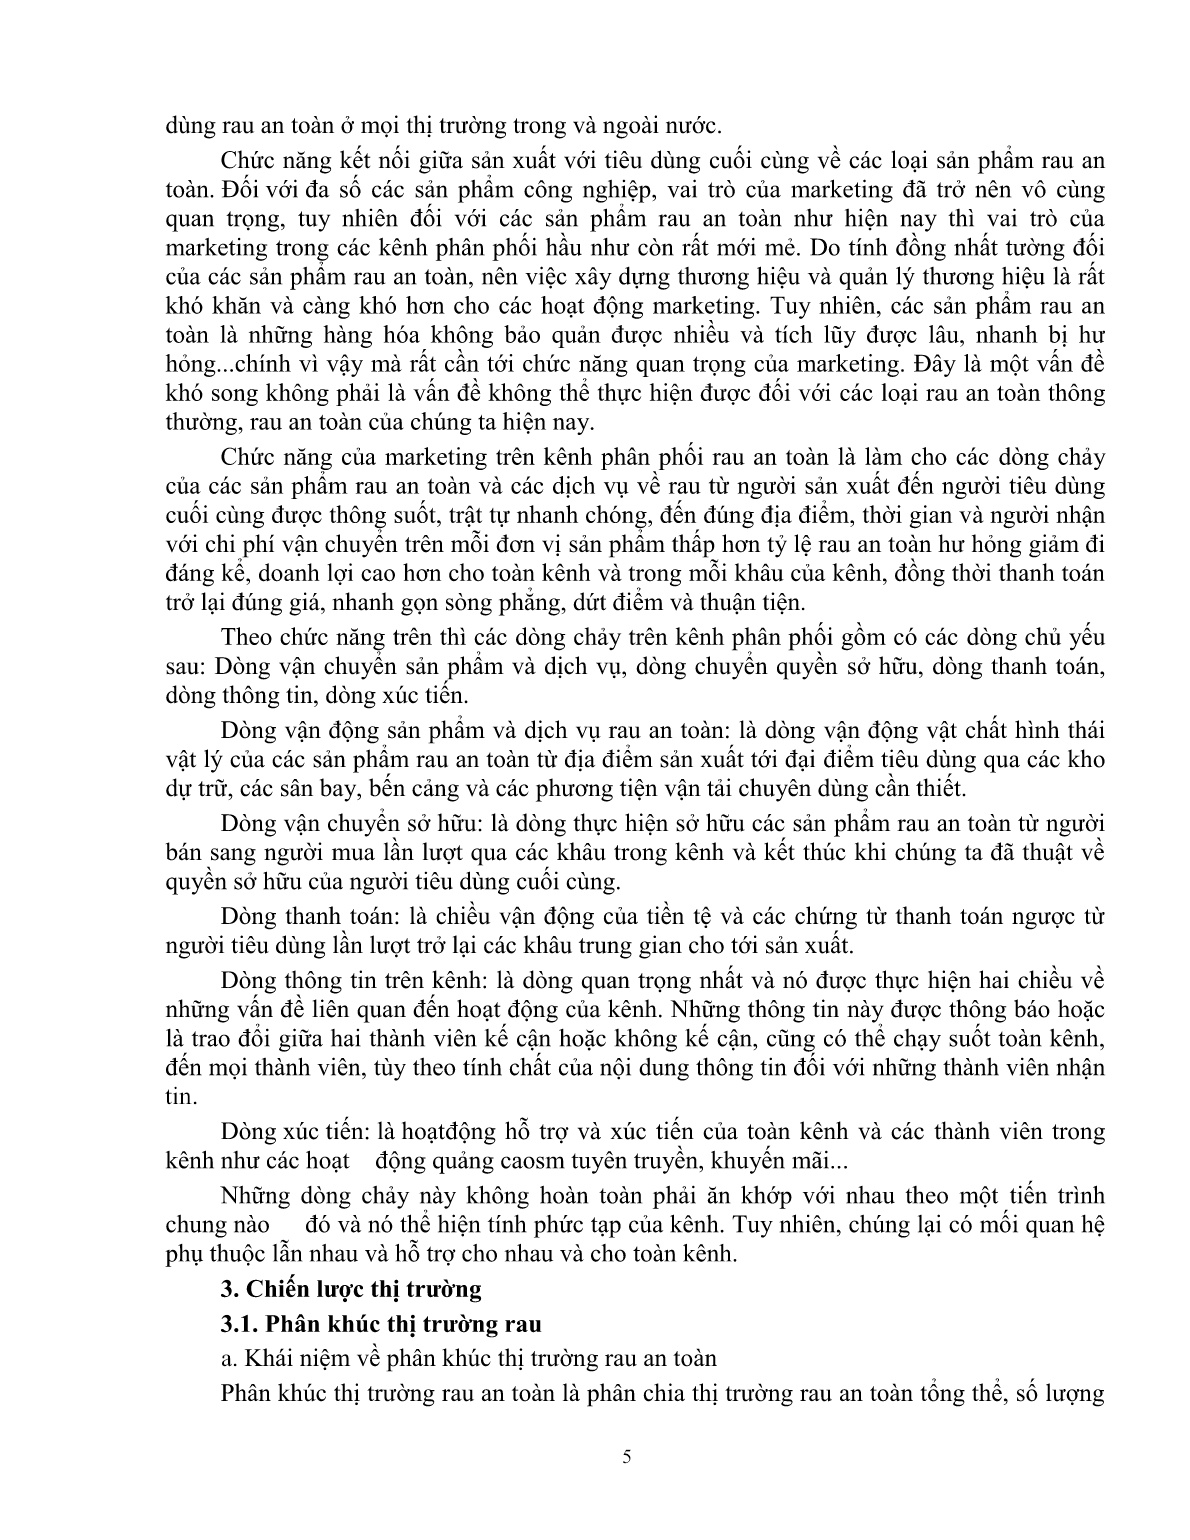 Giáo trình mô đun Tiêu thụ sản phẩn rau an toàn (Trình độ: Đào tạo dưới 03 tháng) trang 6